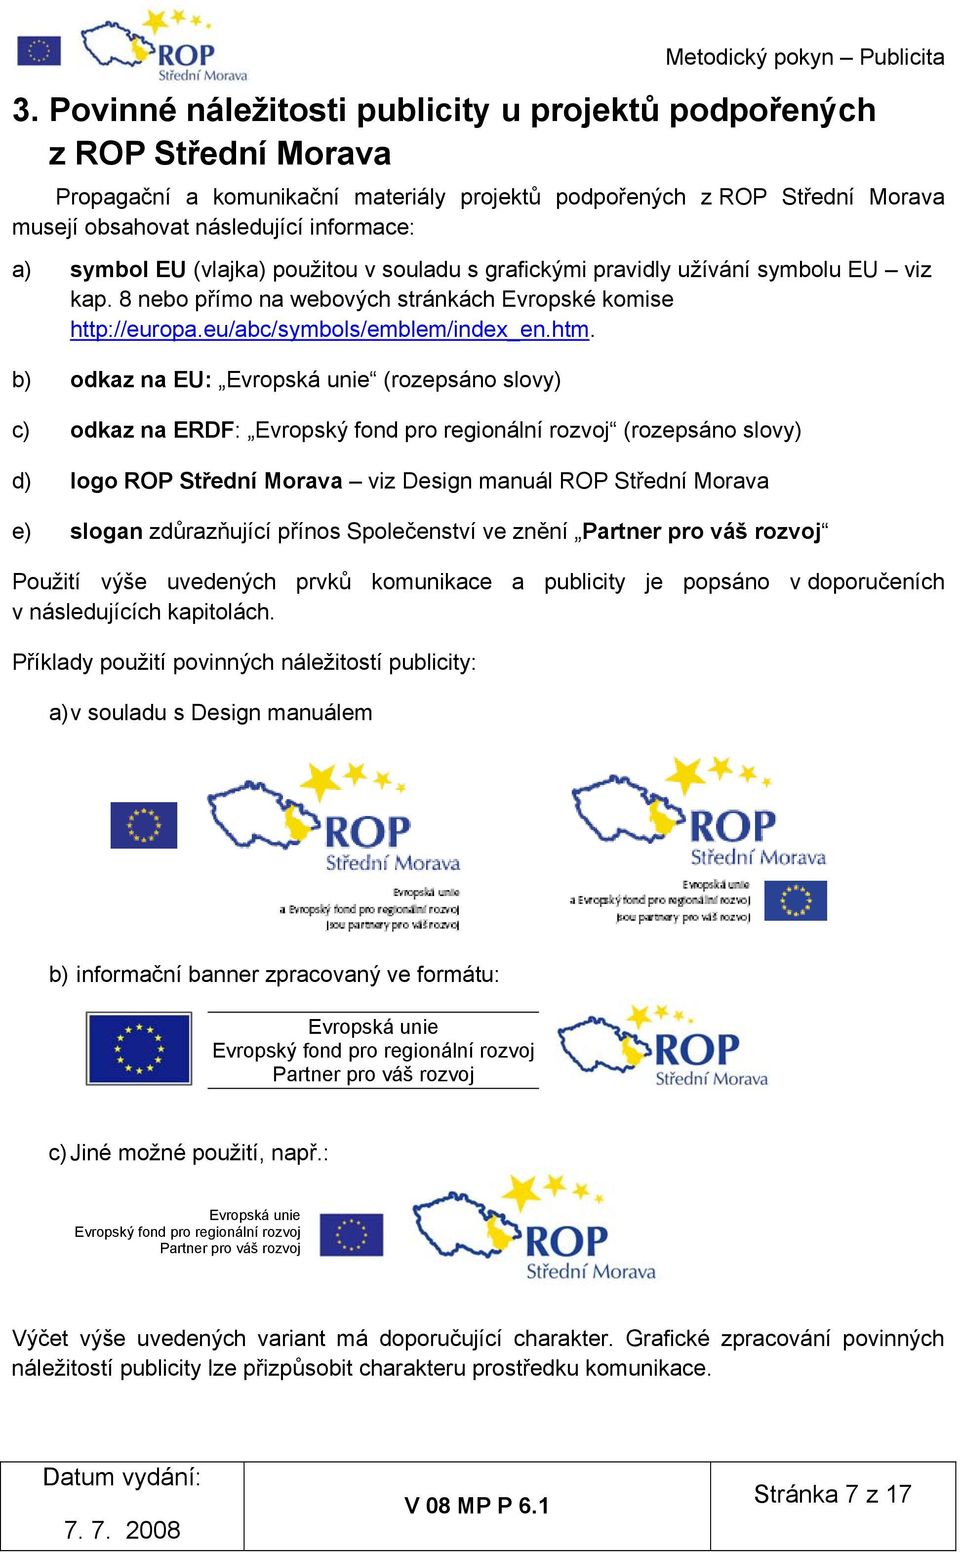 b) odkaz na EU: Evropská unie (rozepsáno slovy) c) odkaz na ERDF: Evropský fond pro regionální rozvoj (rozepsáno slovy) d) logo ROP Střední Morava viz Design manuál ROP Střední Morava e) slogan